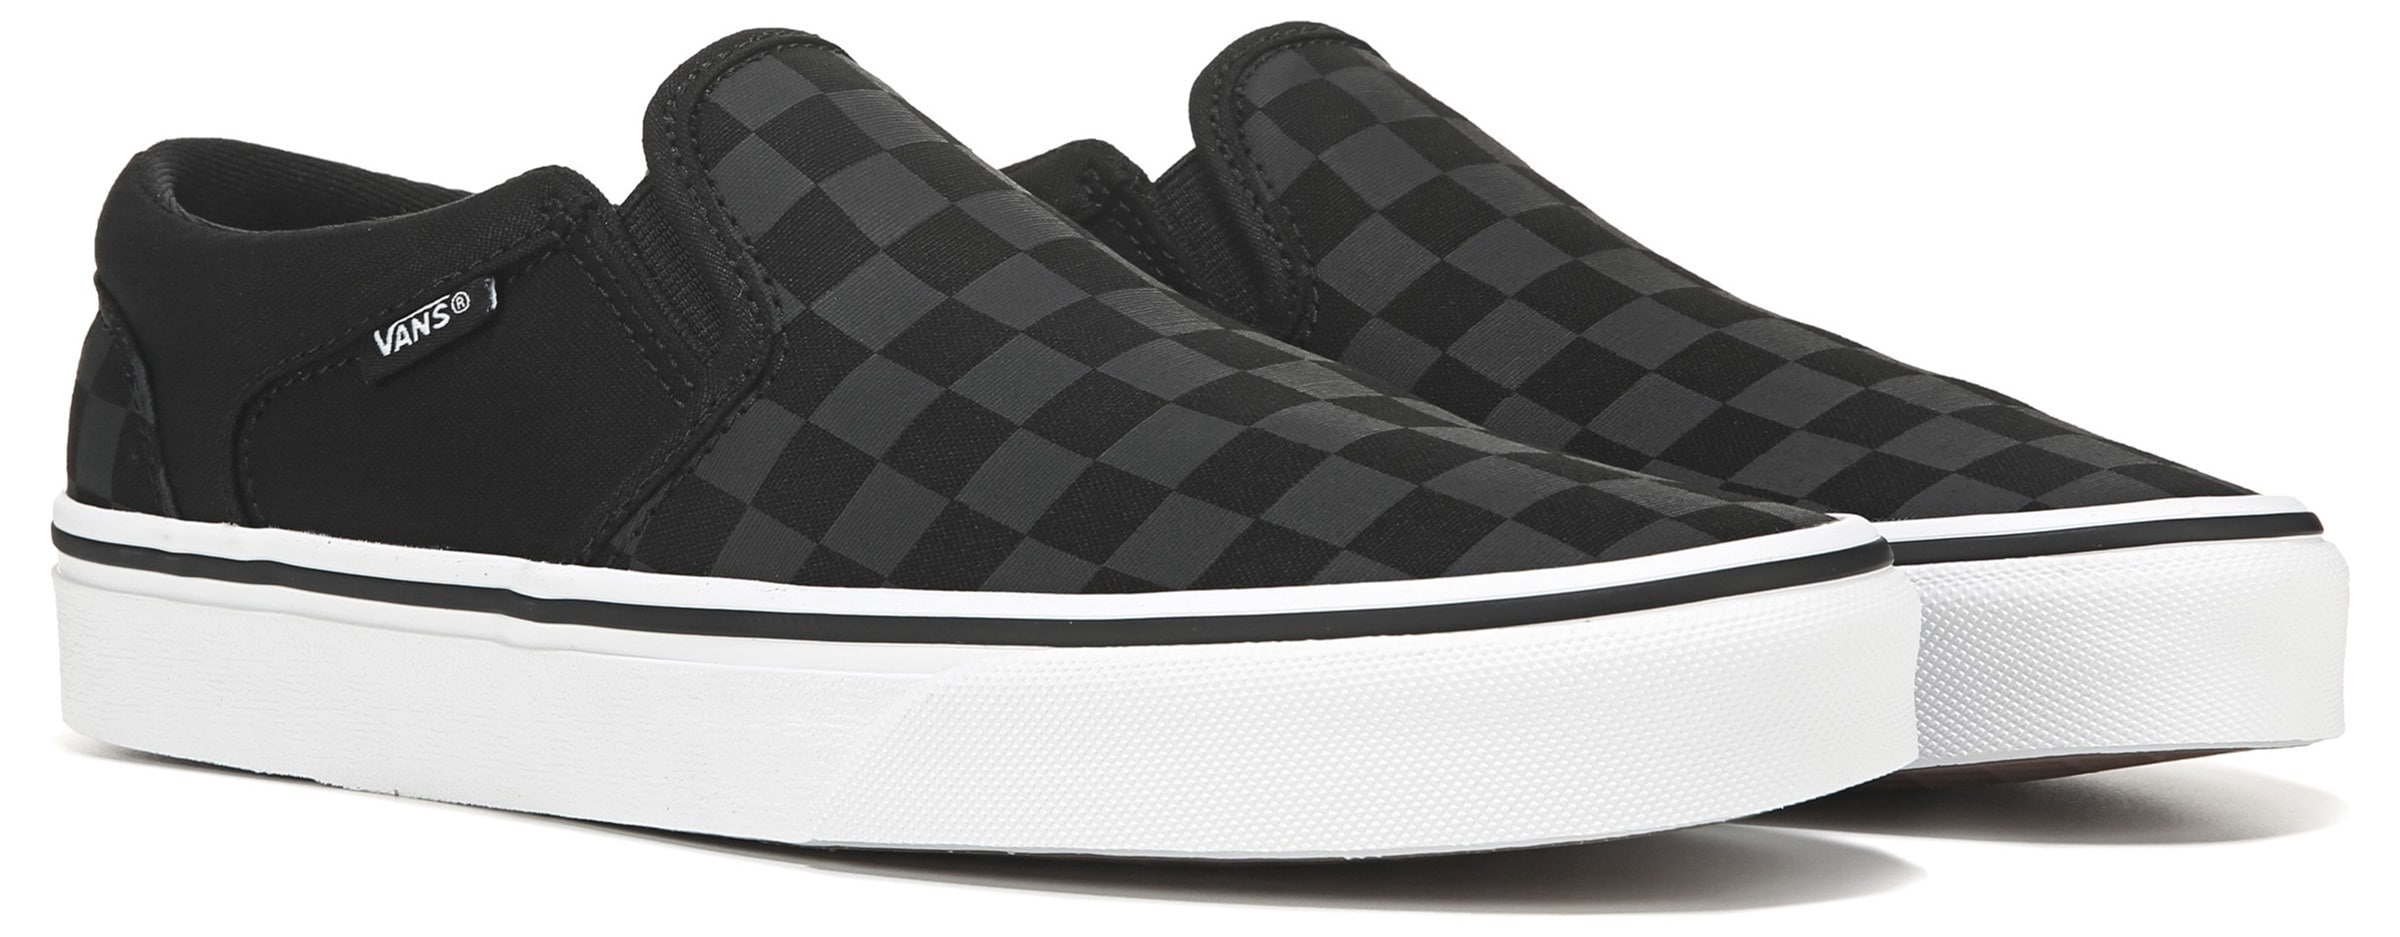 Vans Old Skool' Checkered Slip-on Mules Women Shoes Sneakers Low